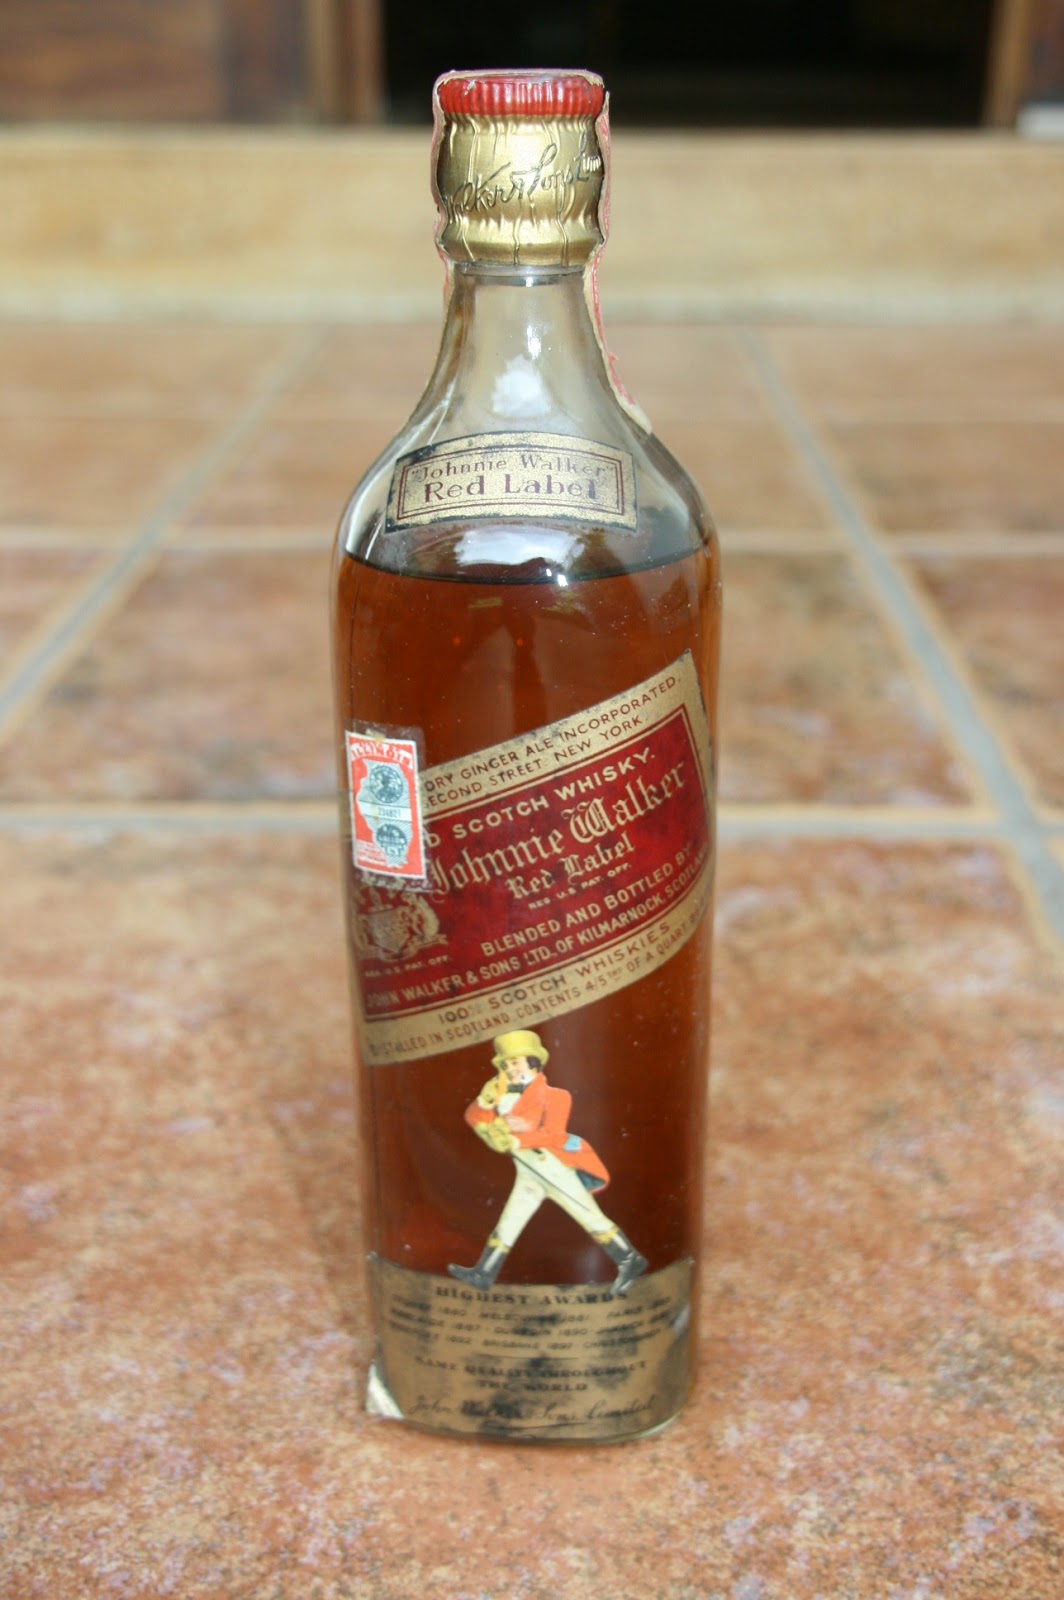 Johnnie Walker Bottles History and Evolution: Red Label